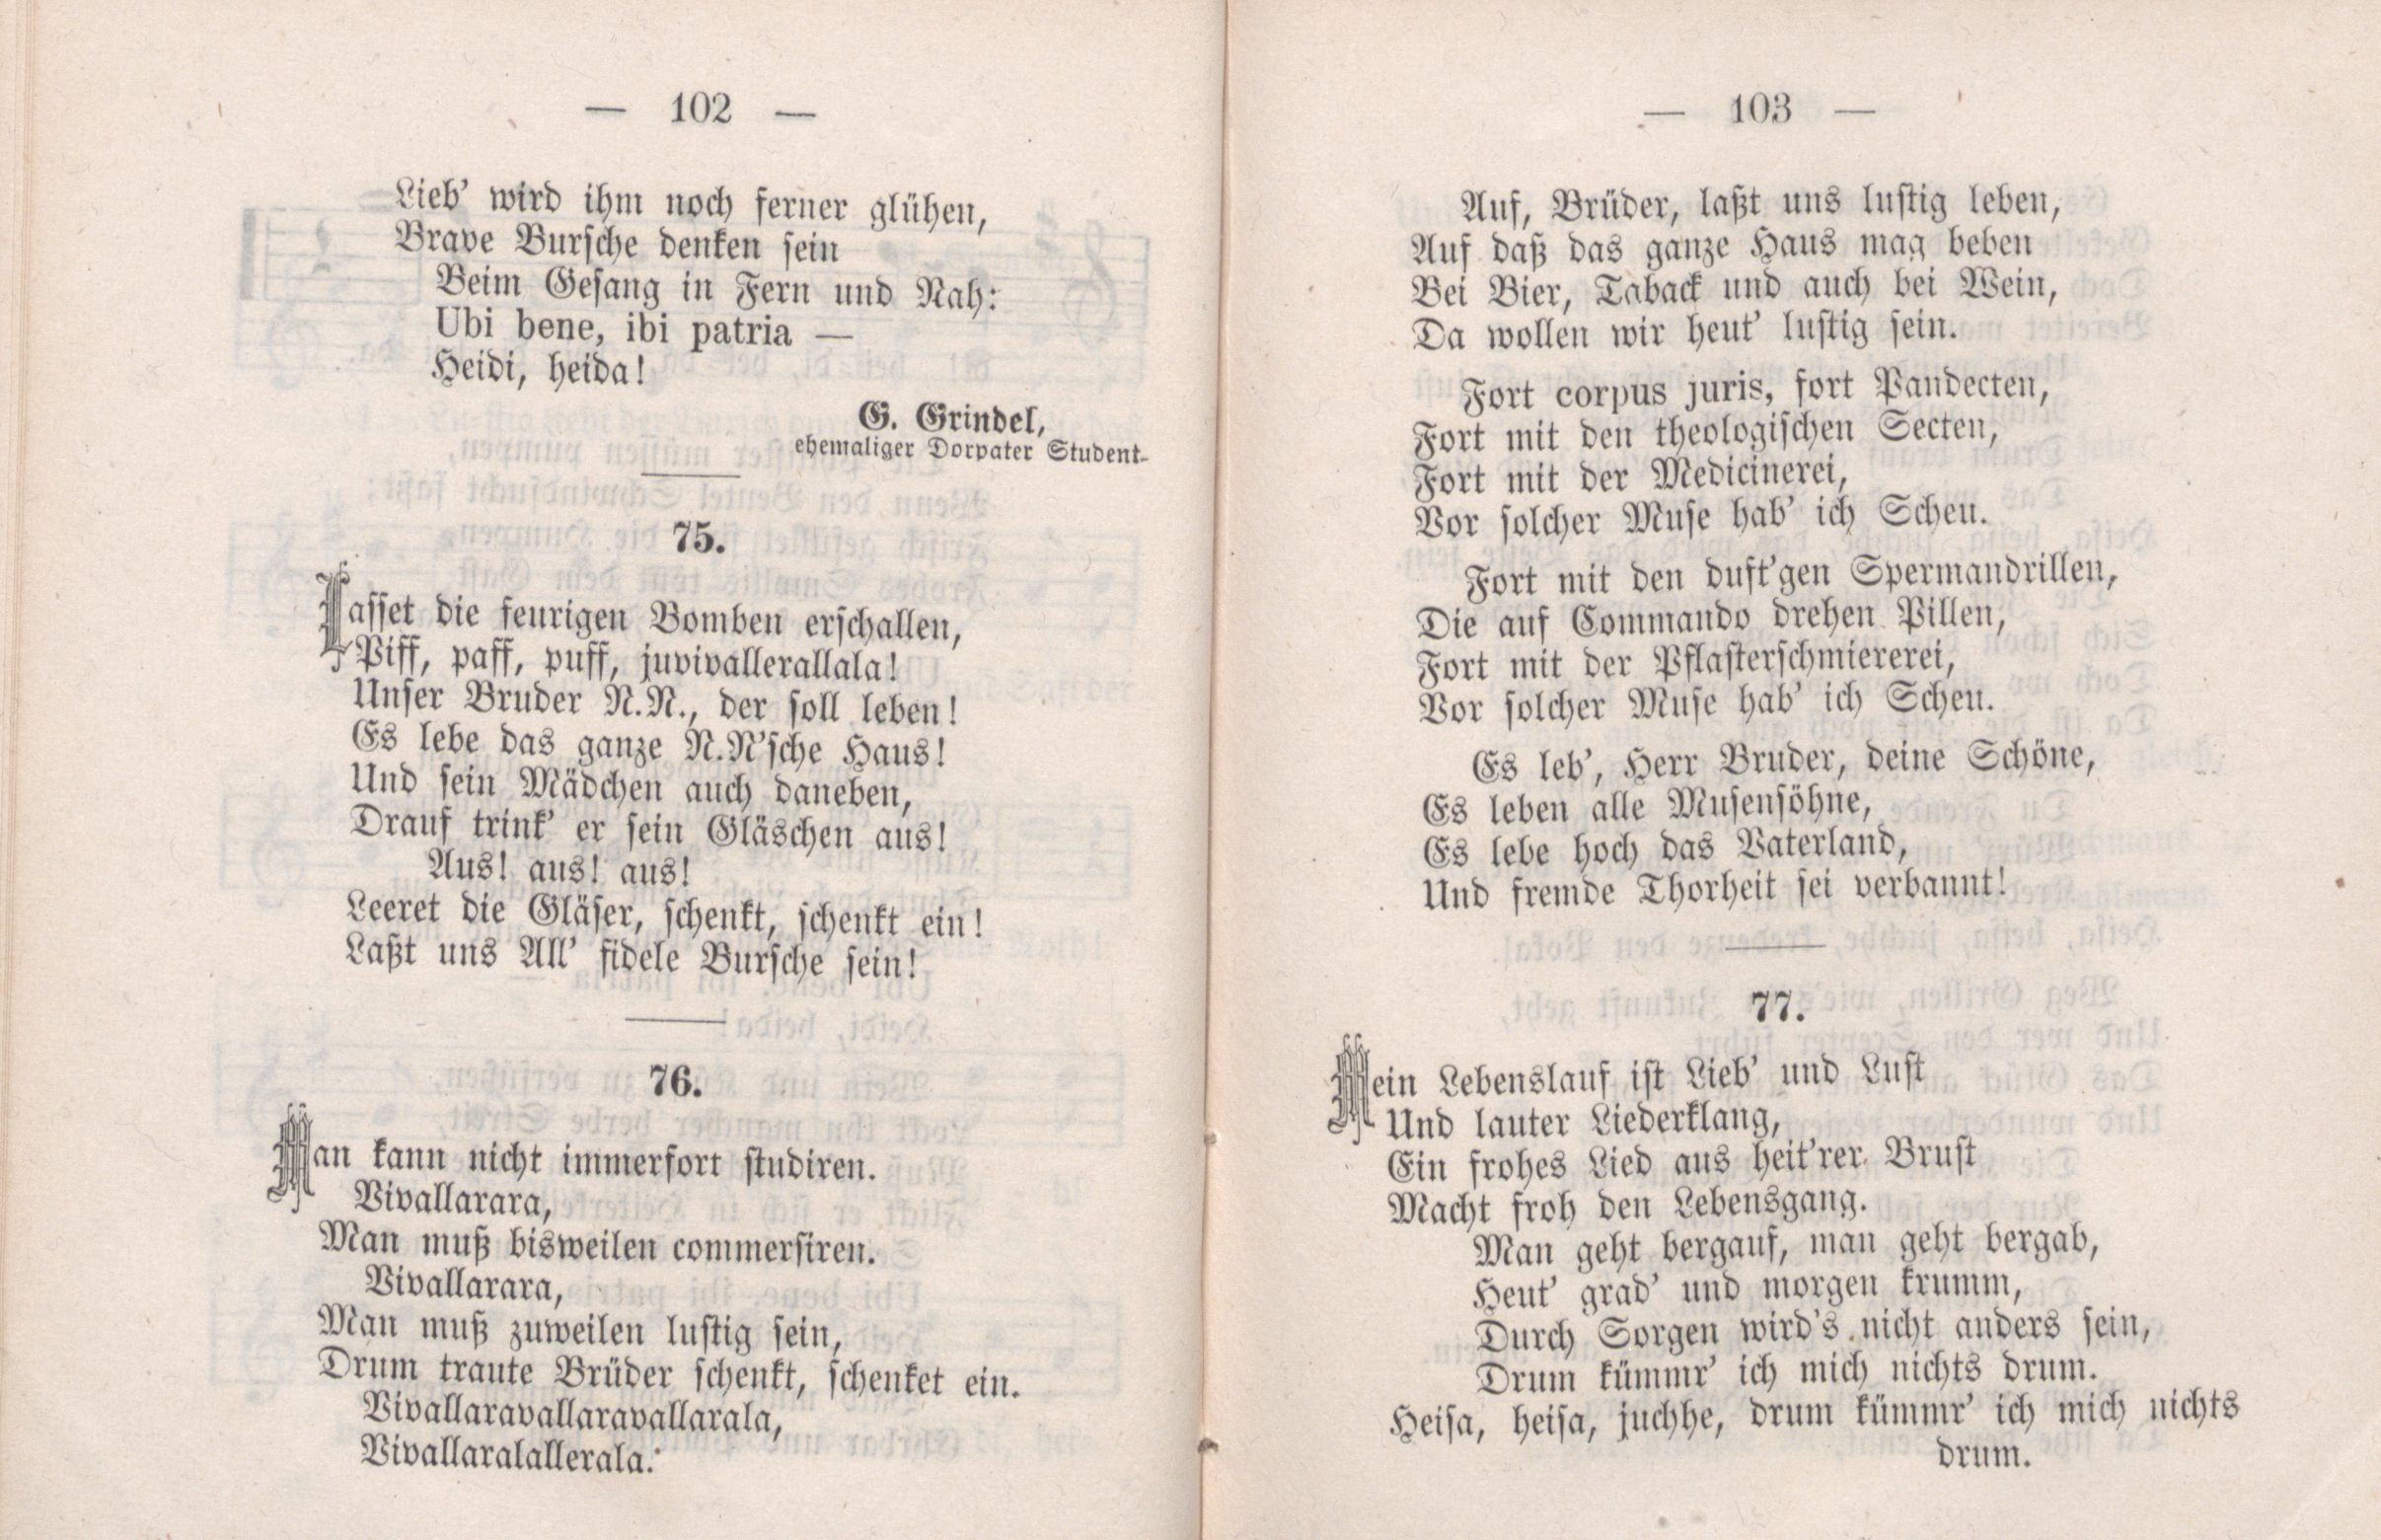 Dorpater Burschenliederbuch (1882) | 57. (102-103) Main body of text